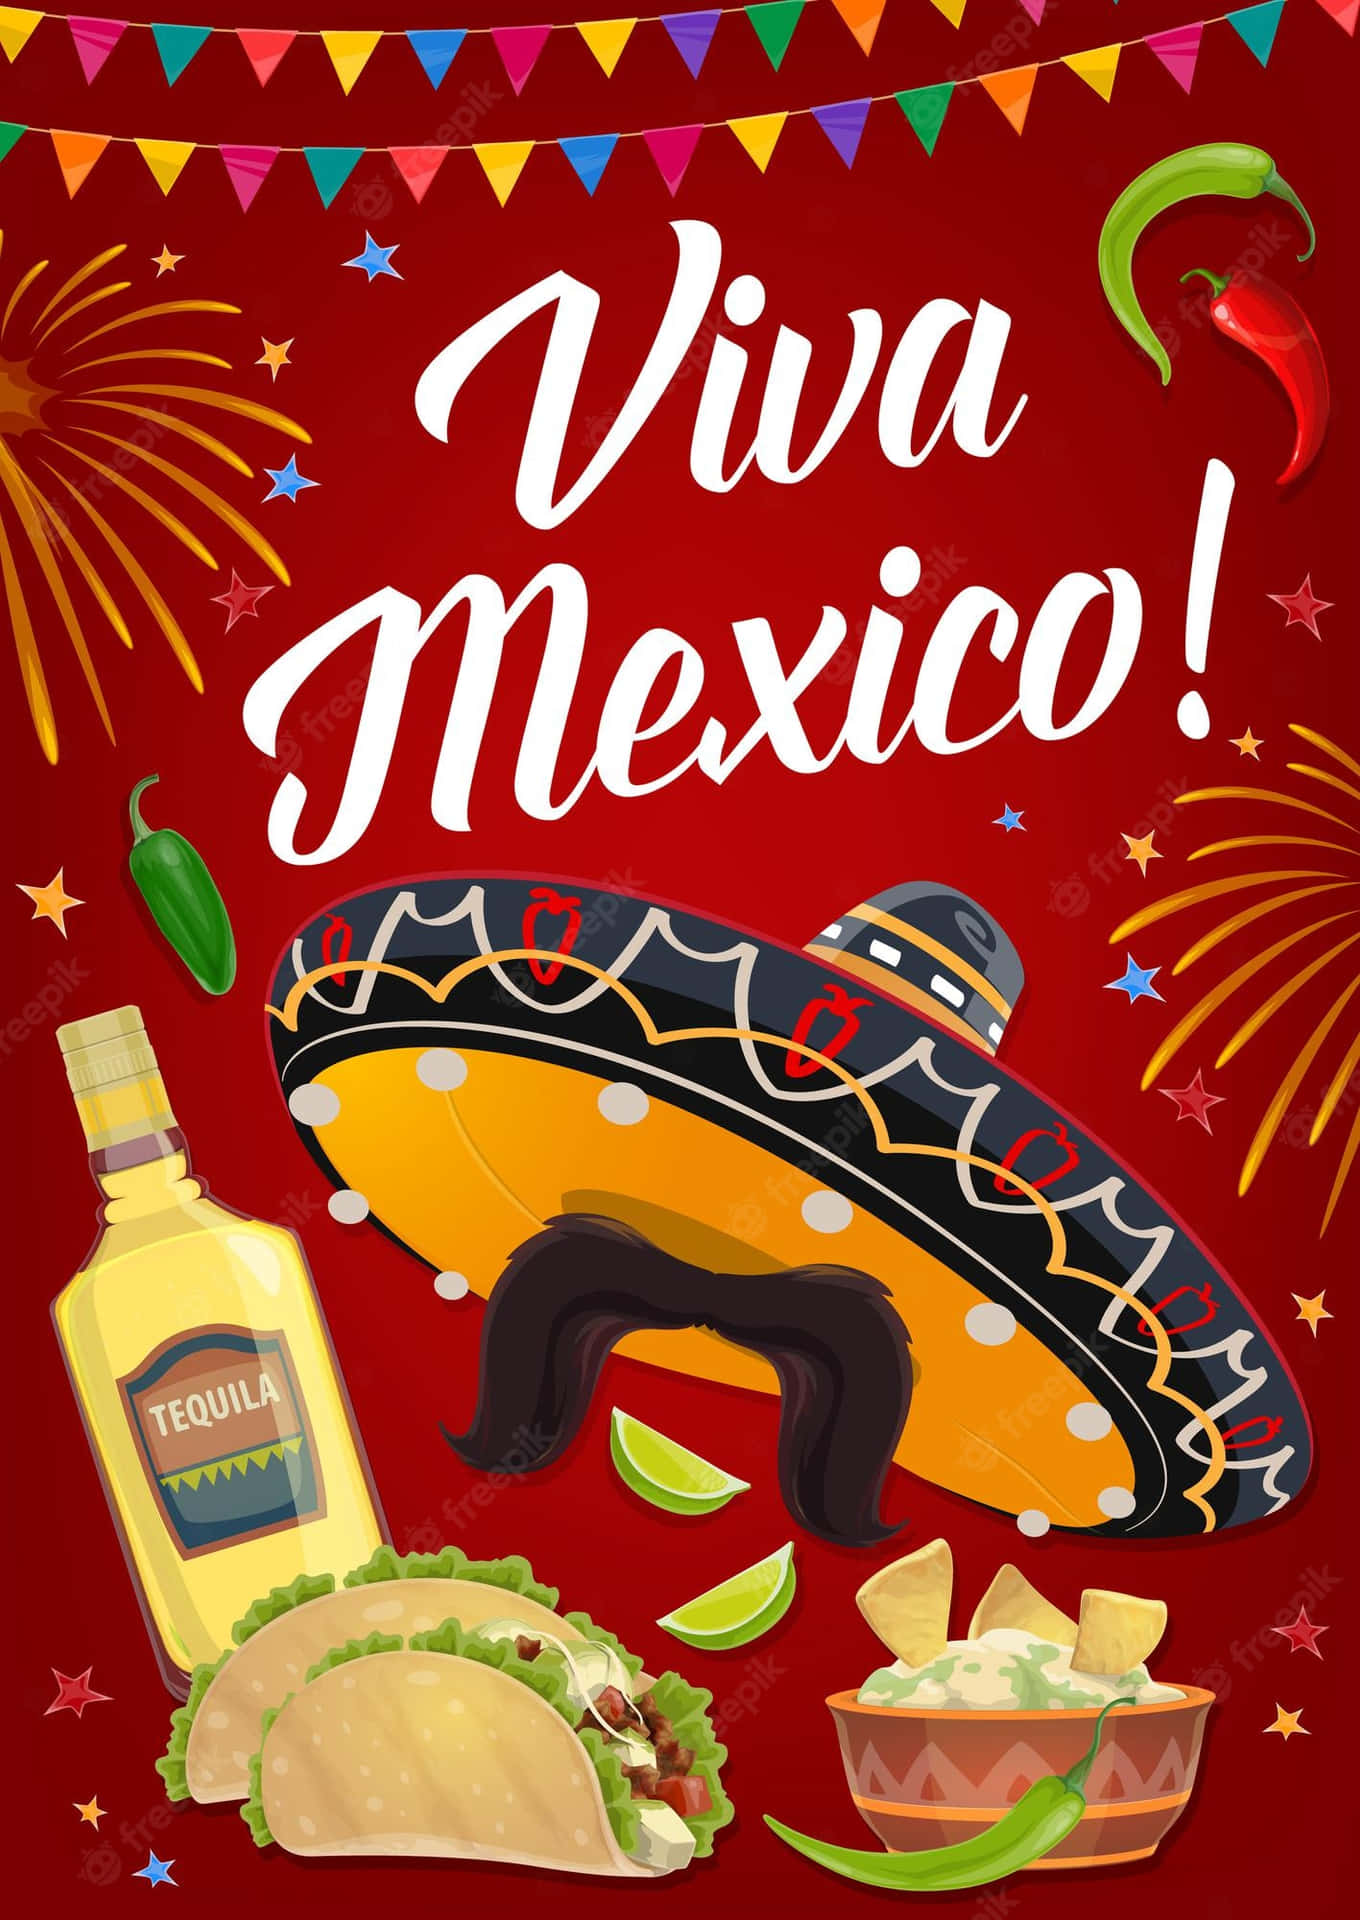 Viva Mexico - Celebrating The Pride, Passion & Culture Of Mexico